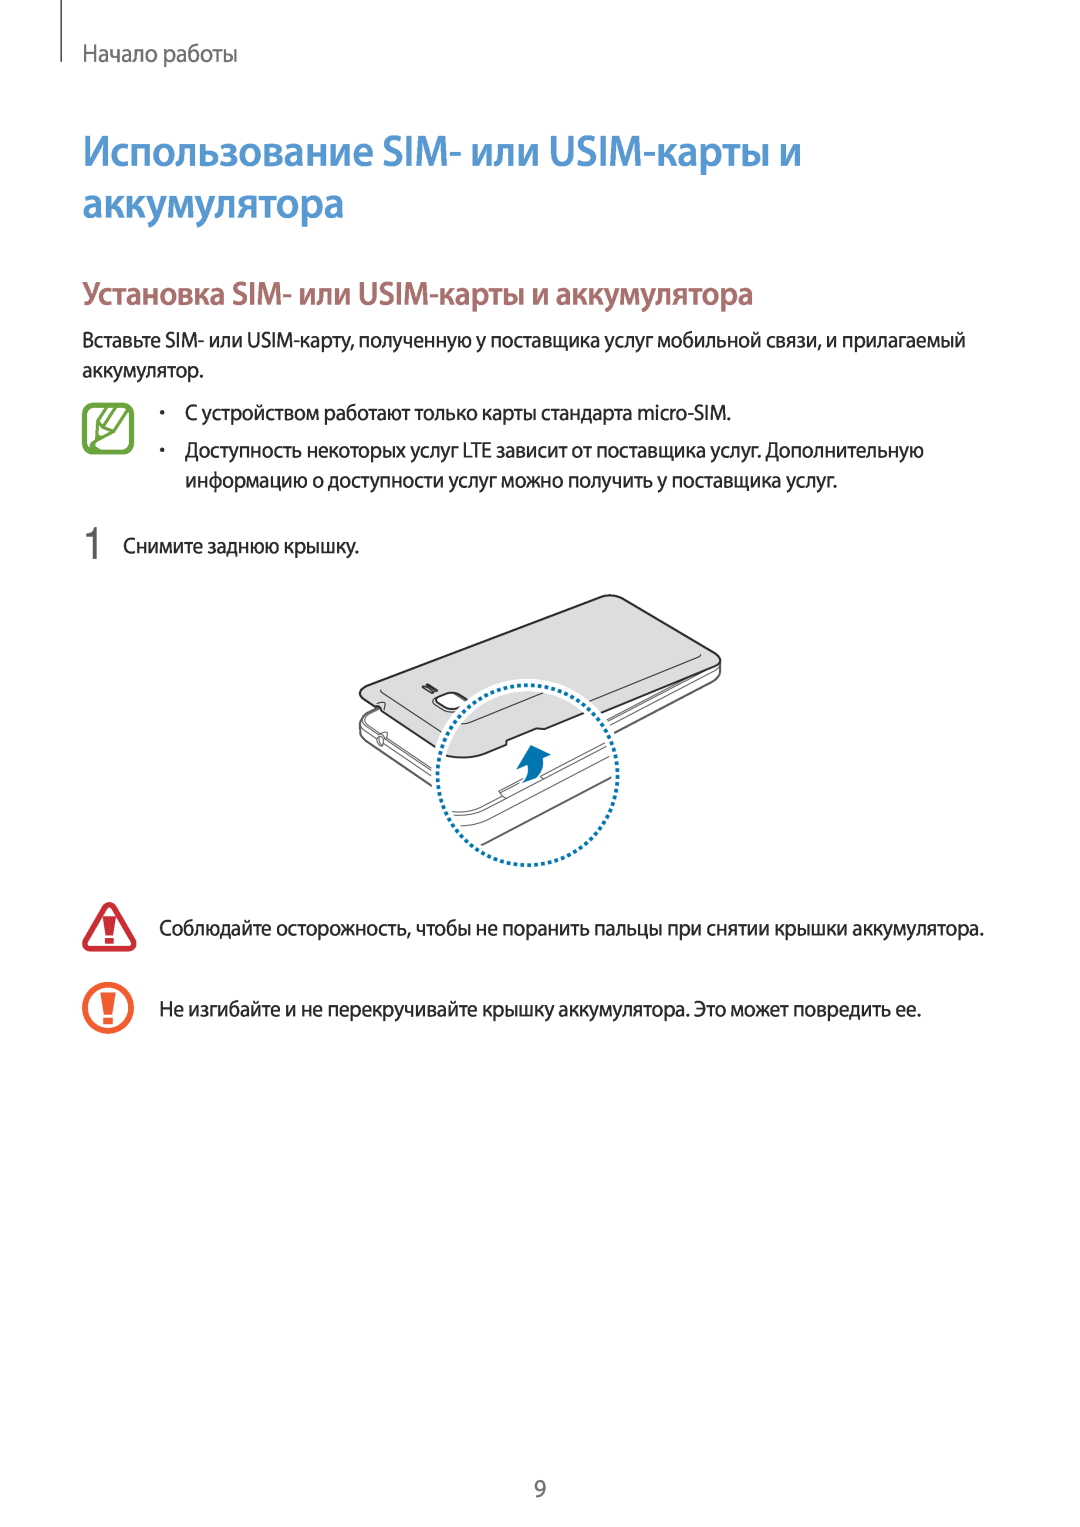 Samsung SM-G531FZAASER Использование SIM- или USIM-карты и аккумулятора, Установка SIM- или USIM-карты и аккумулятора 